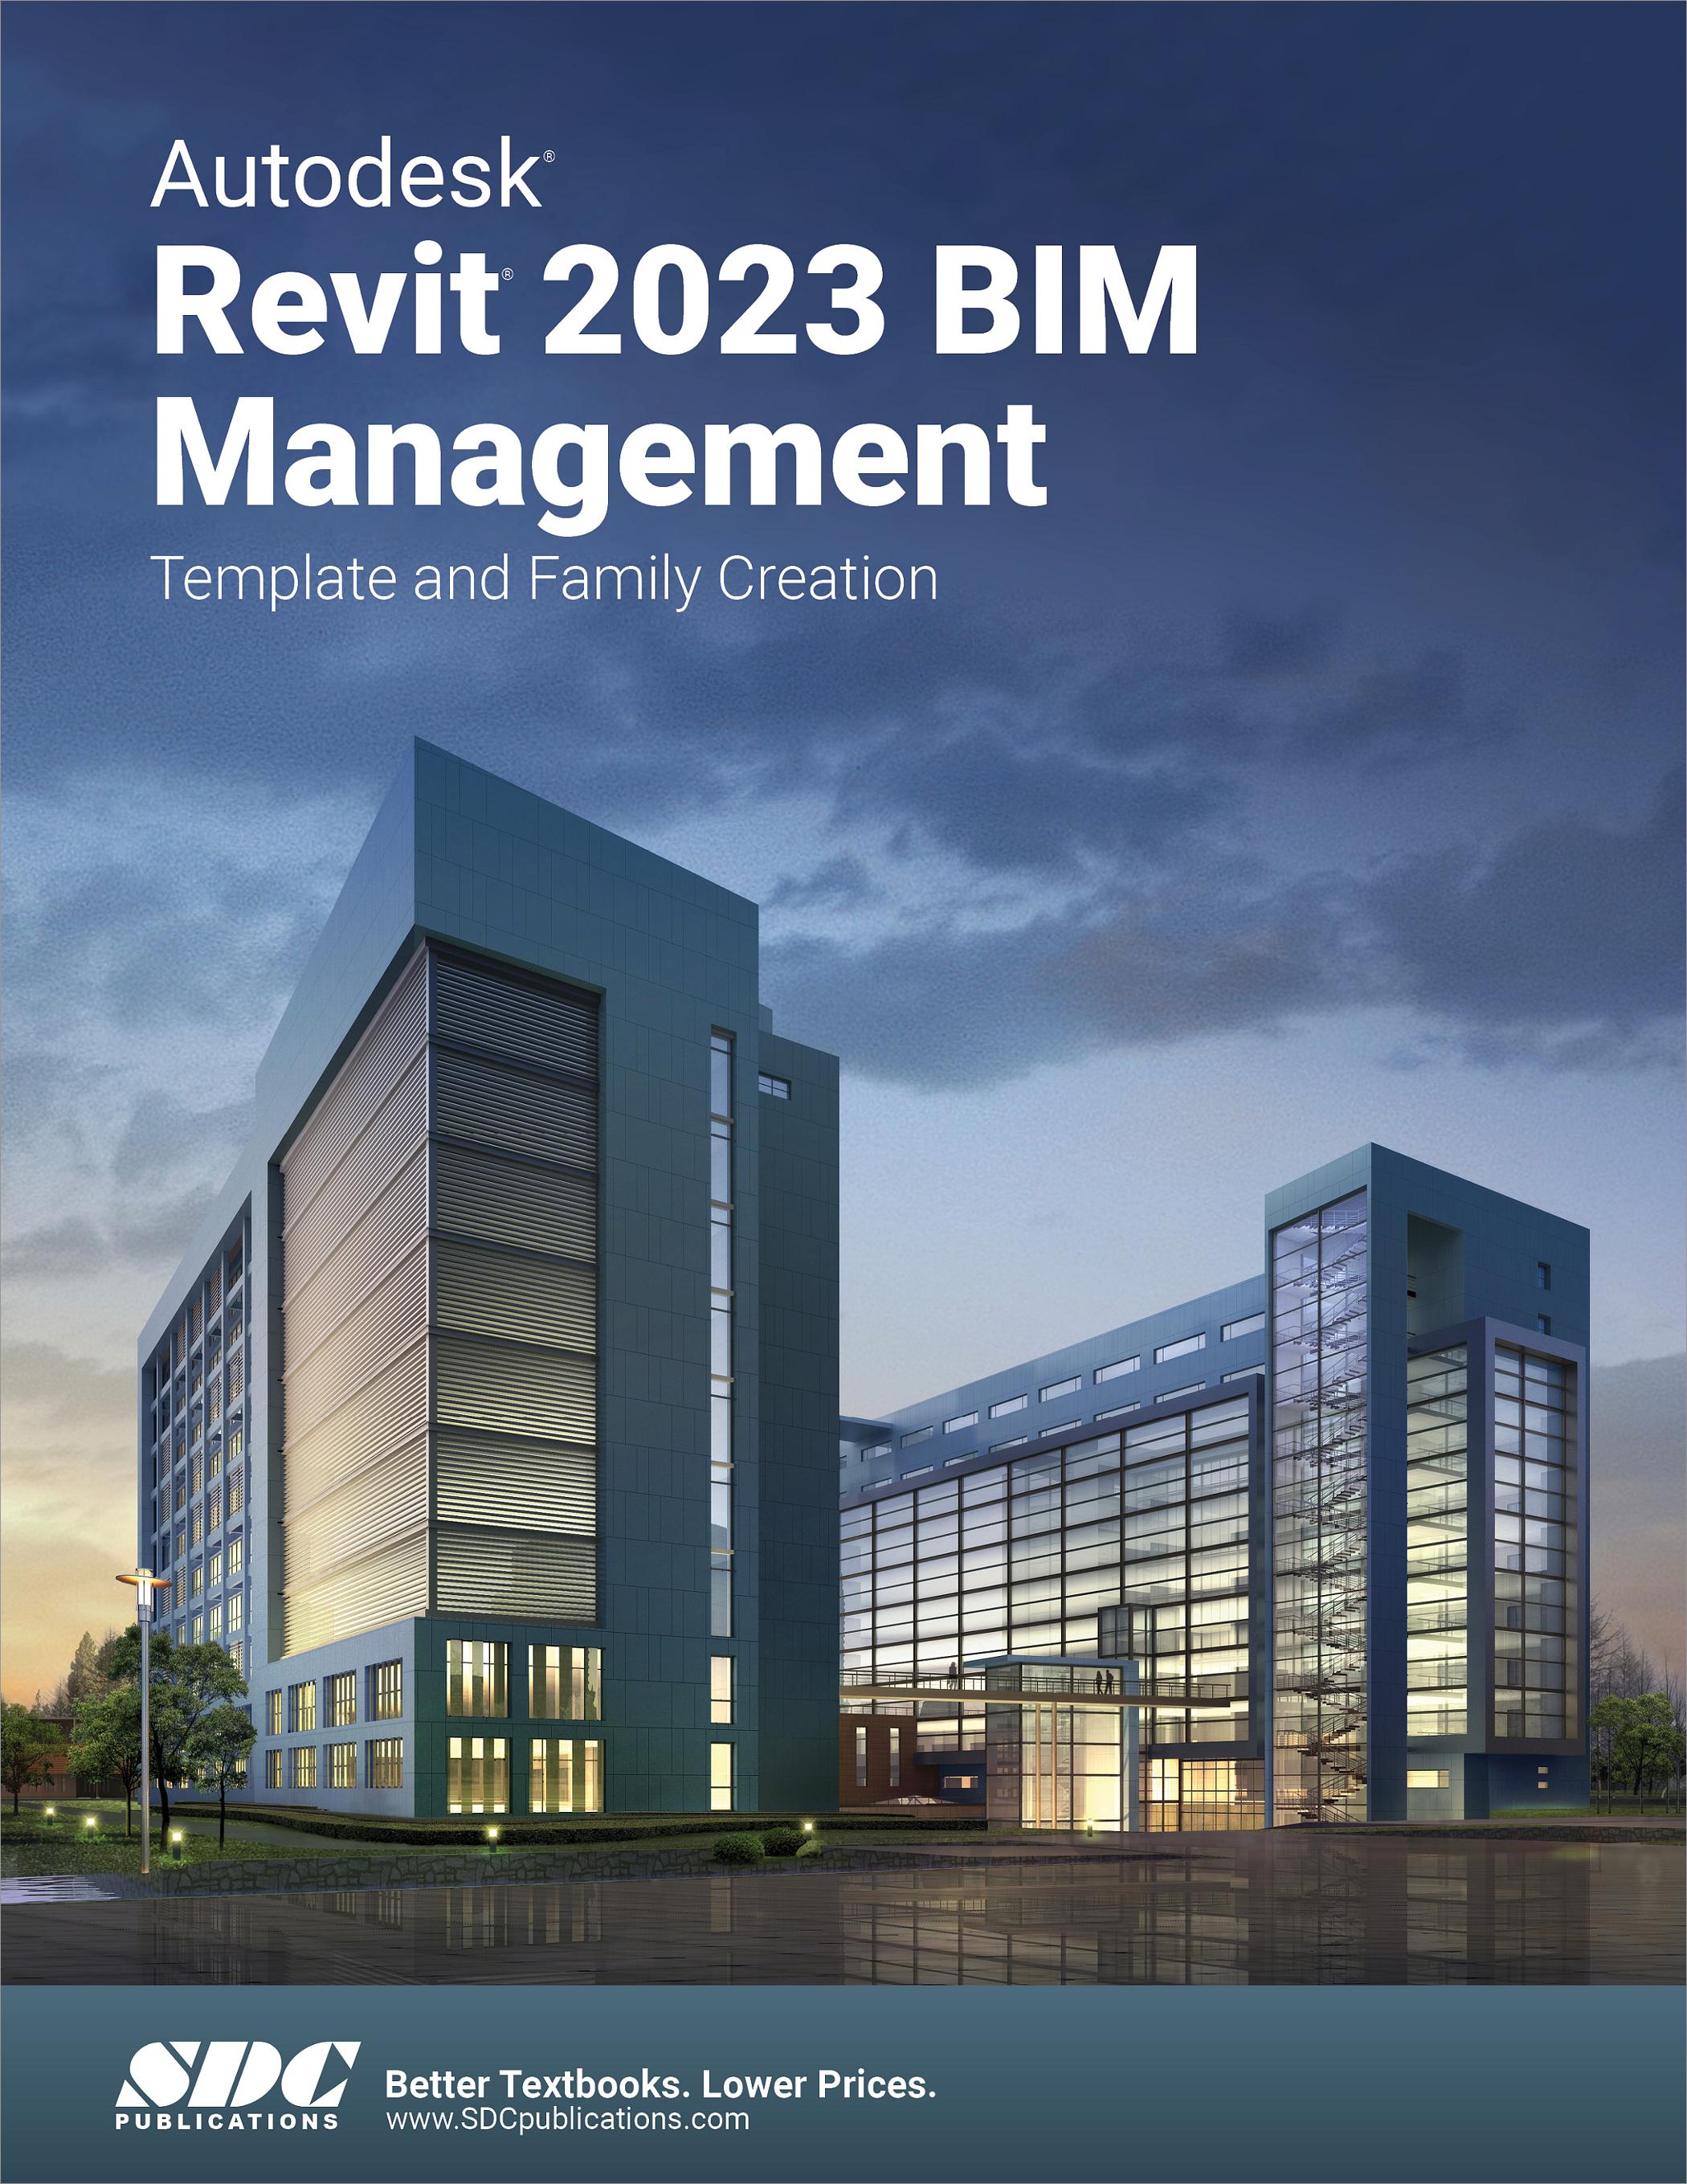 autodesk-revit-2023-bim-management-book-9781630575281-sdc-publications